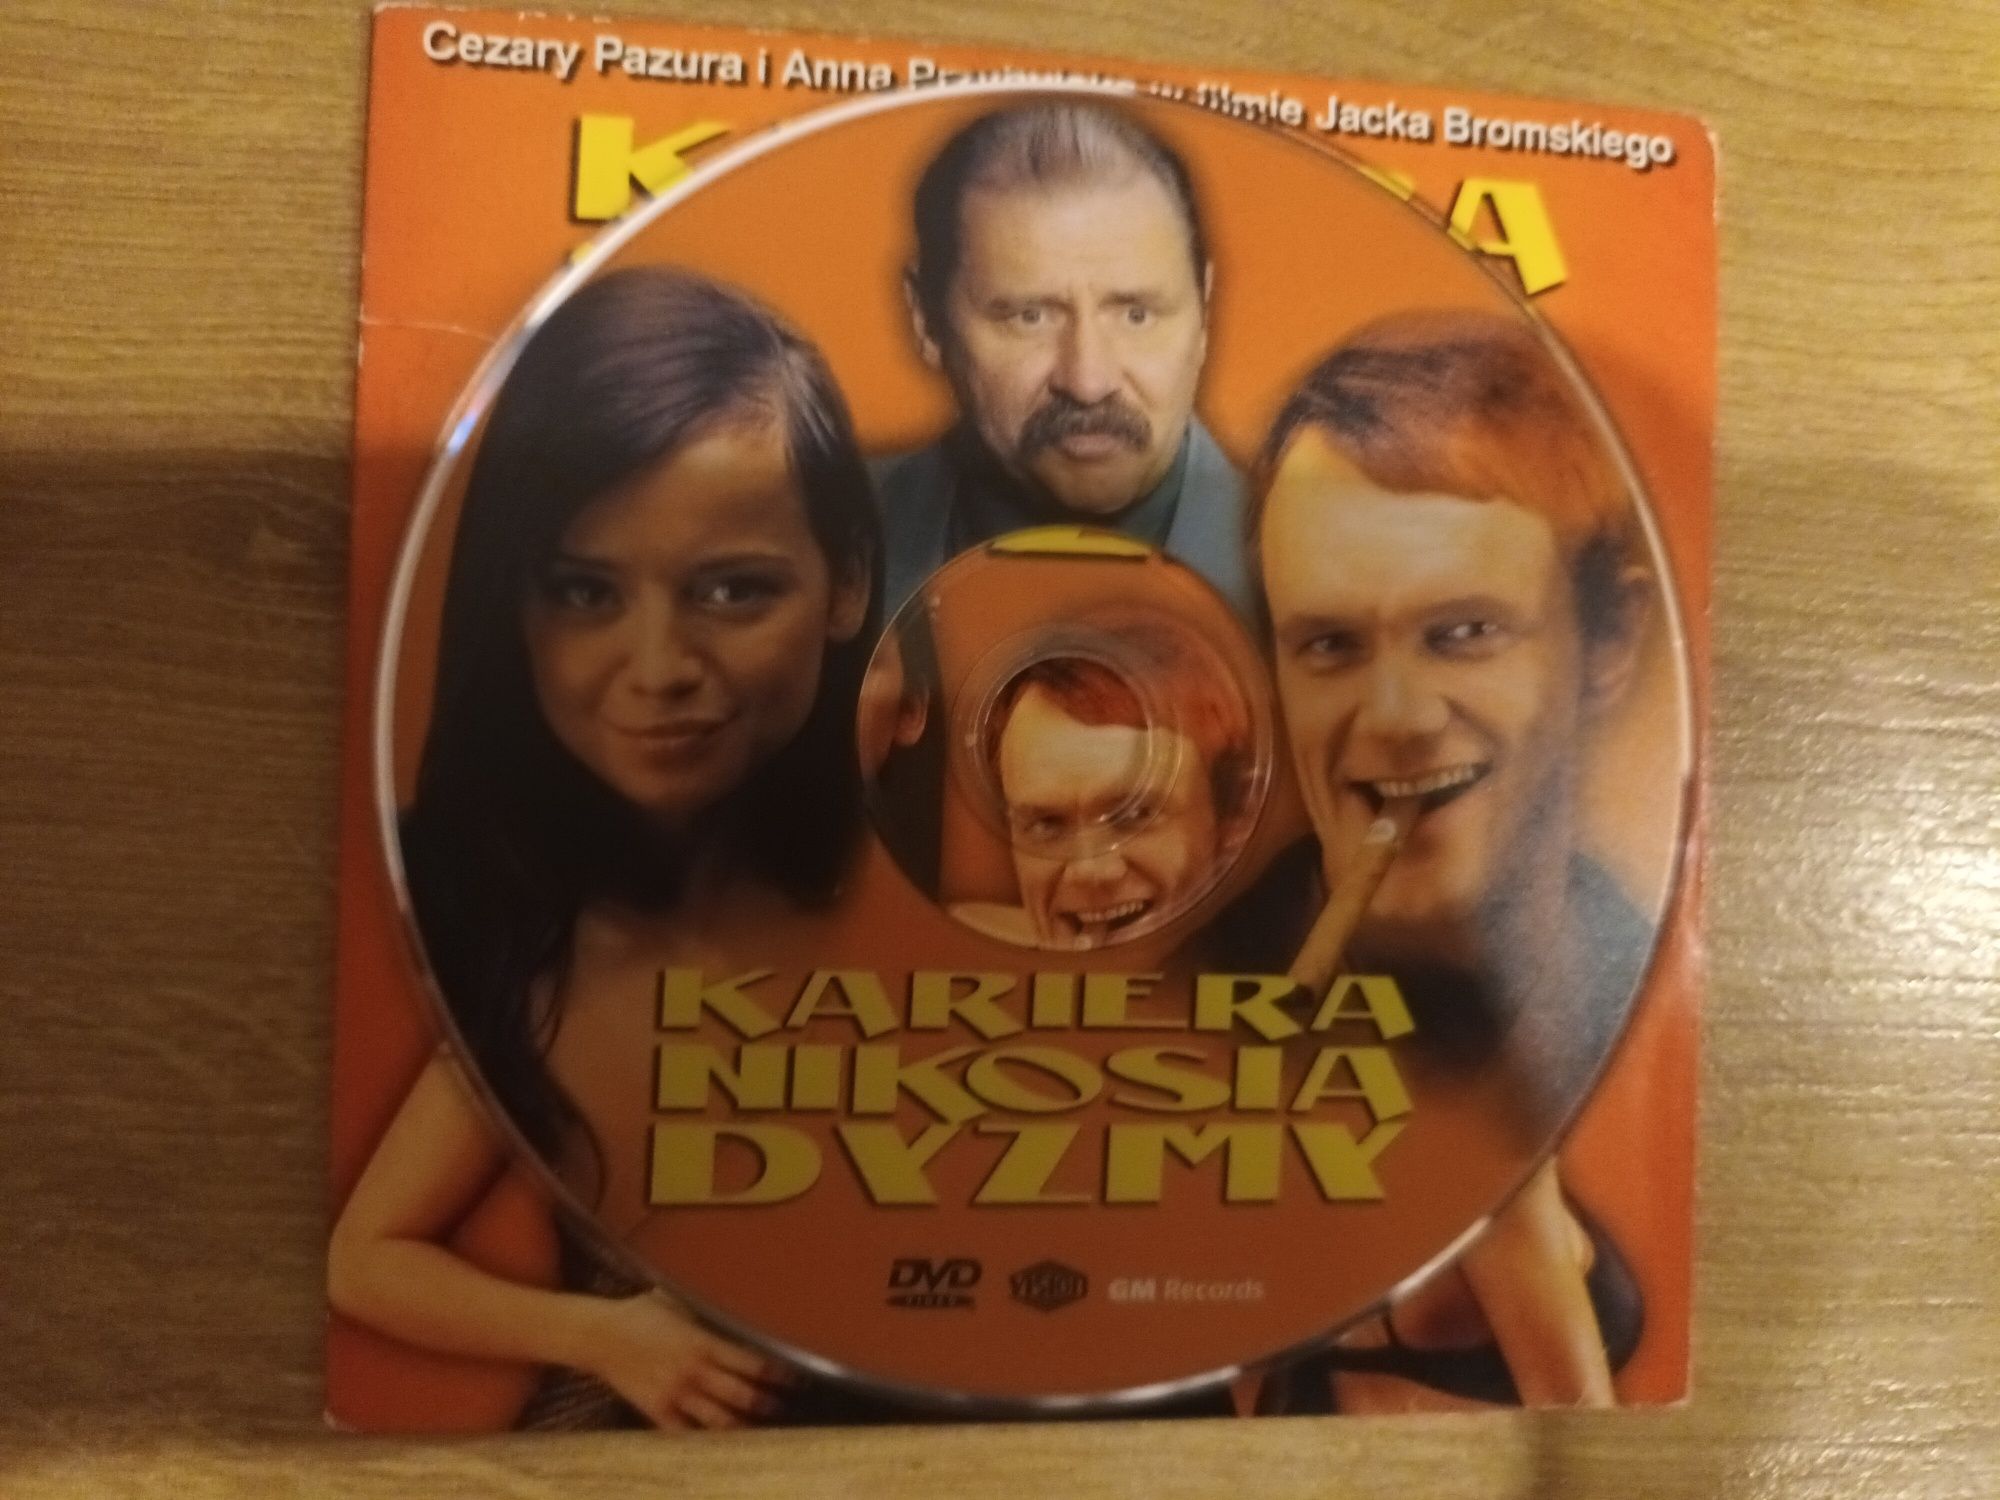 Kariera Nikosia Dyzmy - dvd